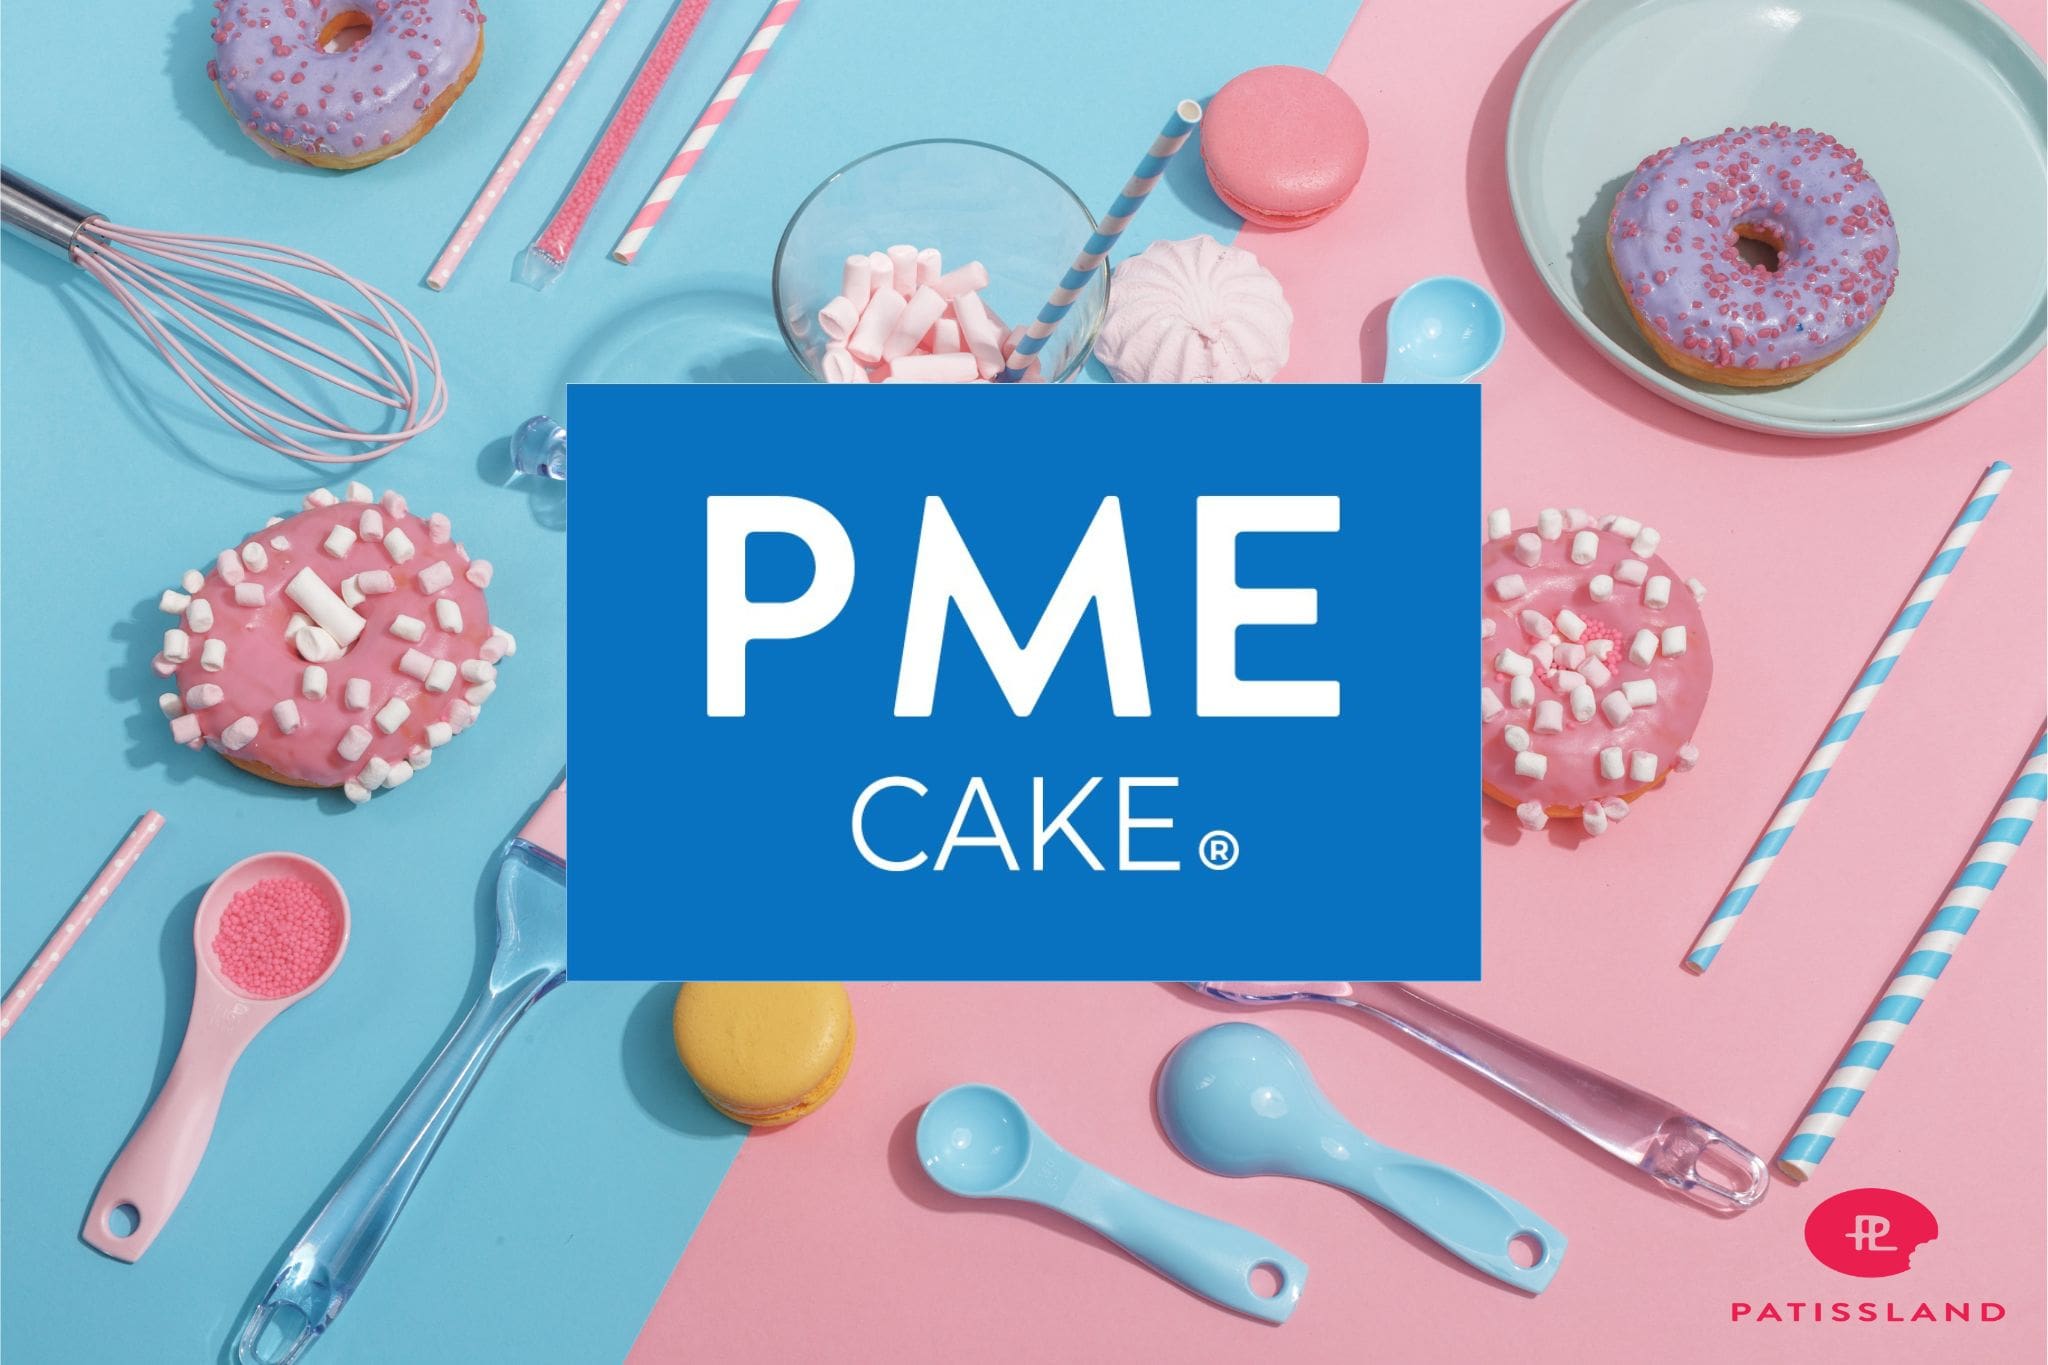 Collection de produits PME chez Patissland spécialiste en ligne de materiel cake design